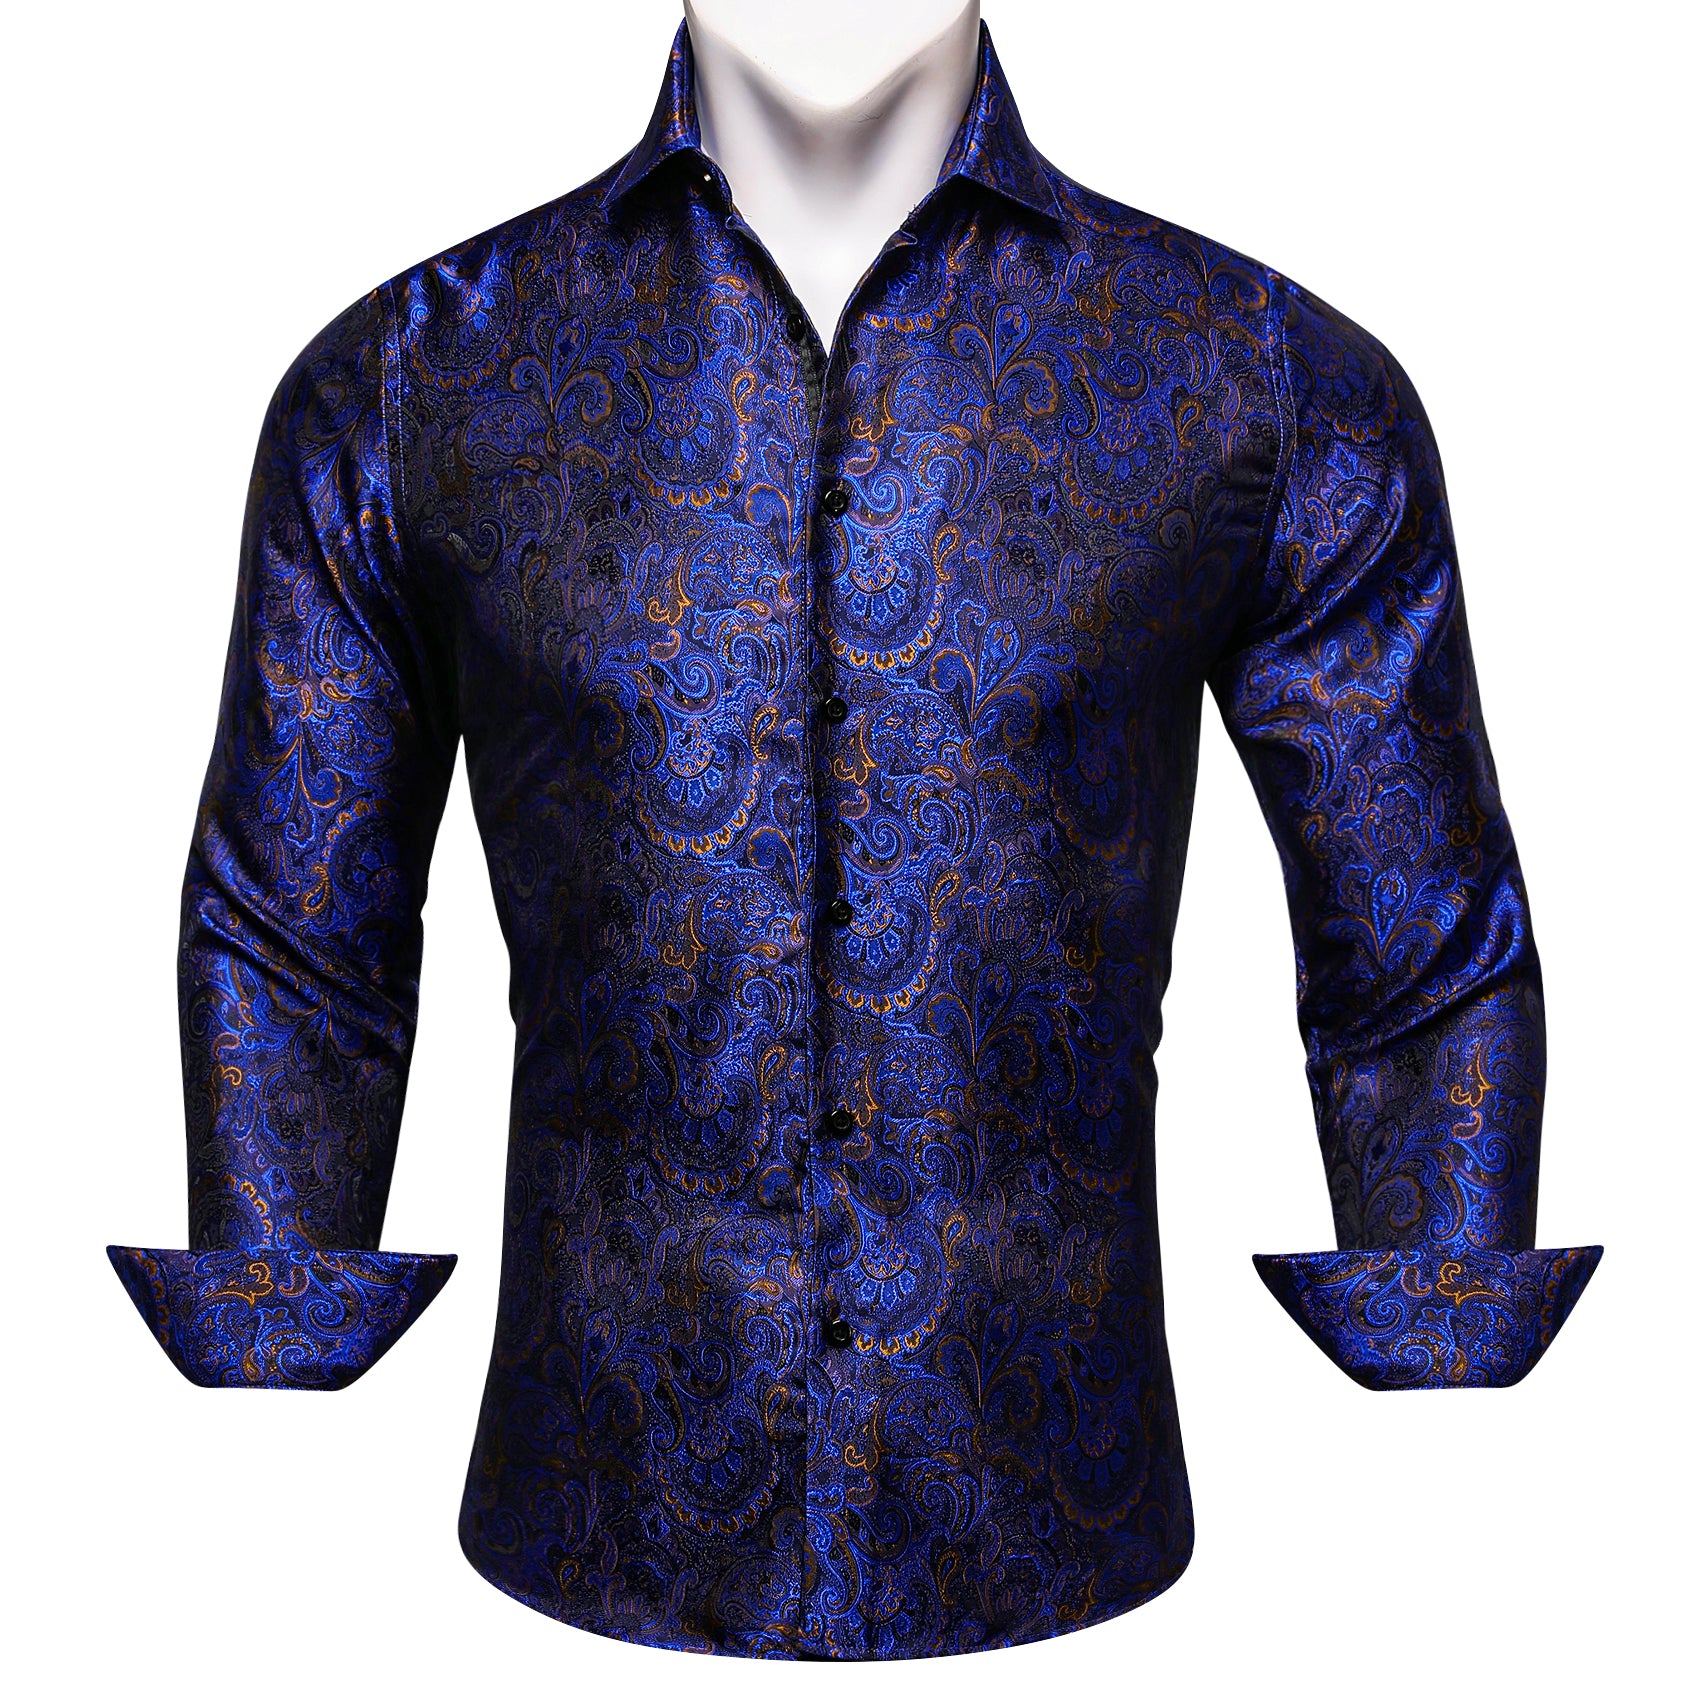 Barry.wang Button Down Shirt Blue Golden Floral Long Sleeve Shirt